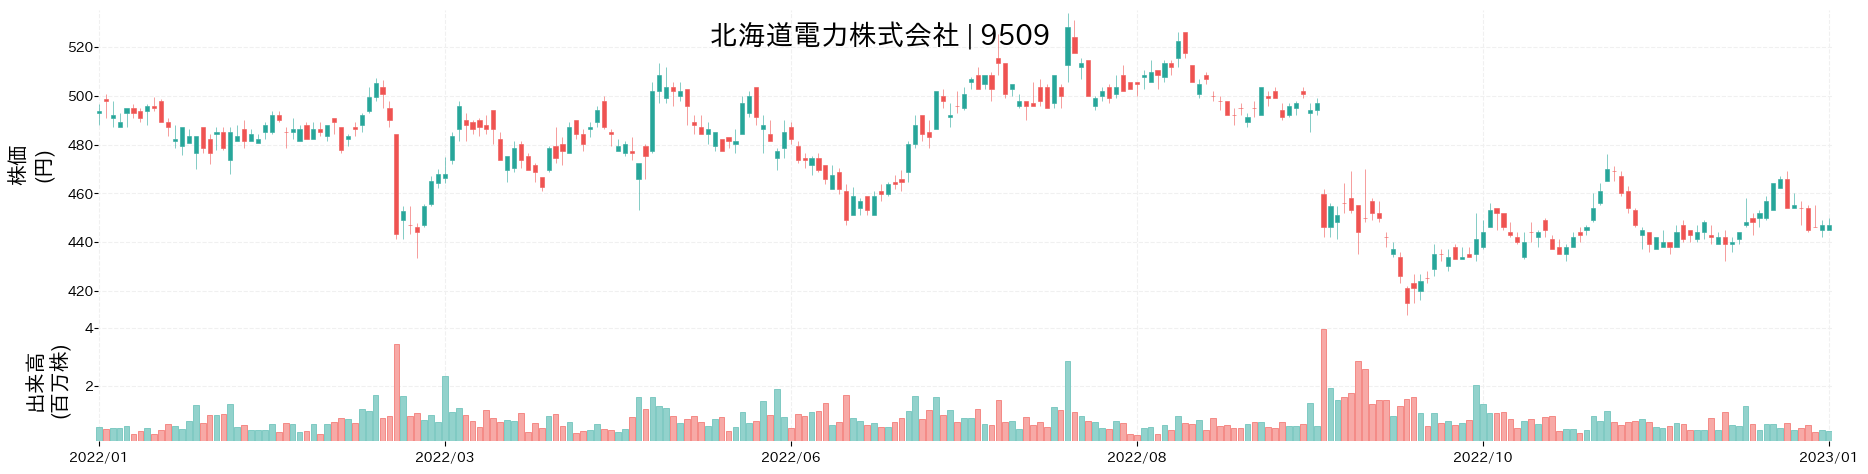 北海道電力の株価推移(2022)